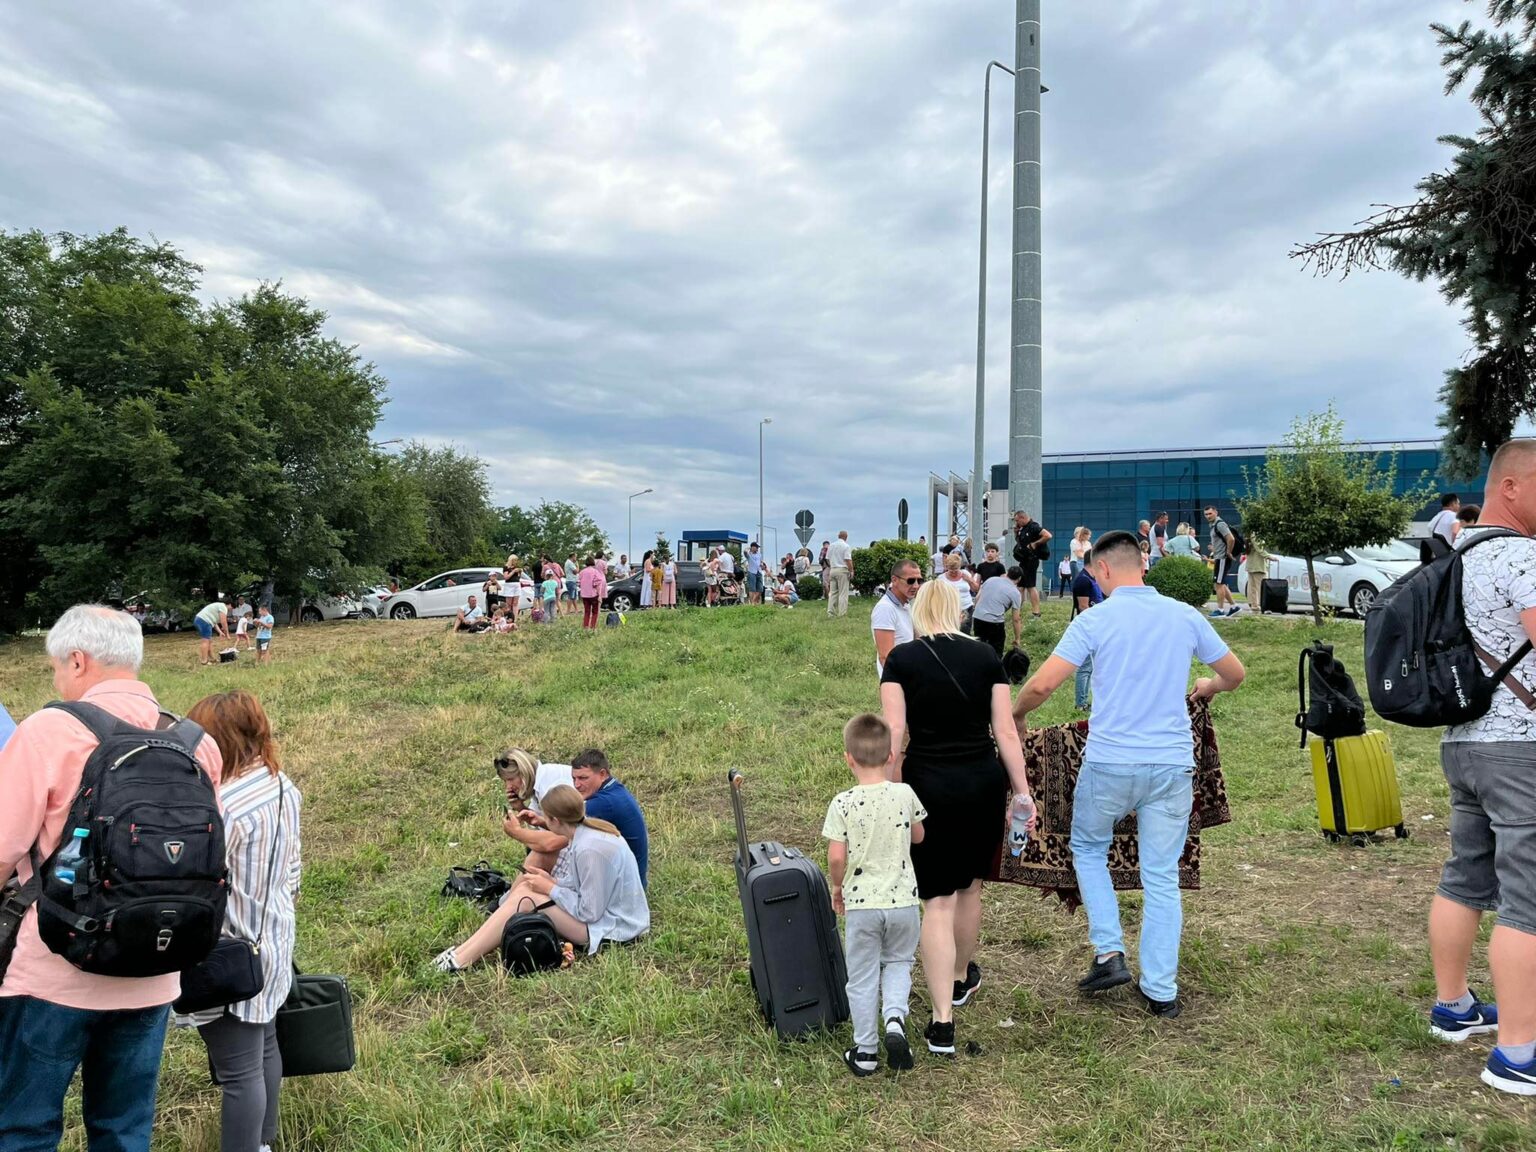 (ФОТО) В Кишиневском аэропорту новое сообщение о бомбе